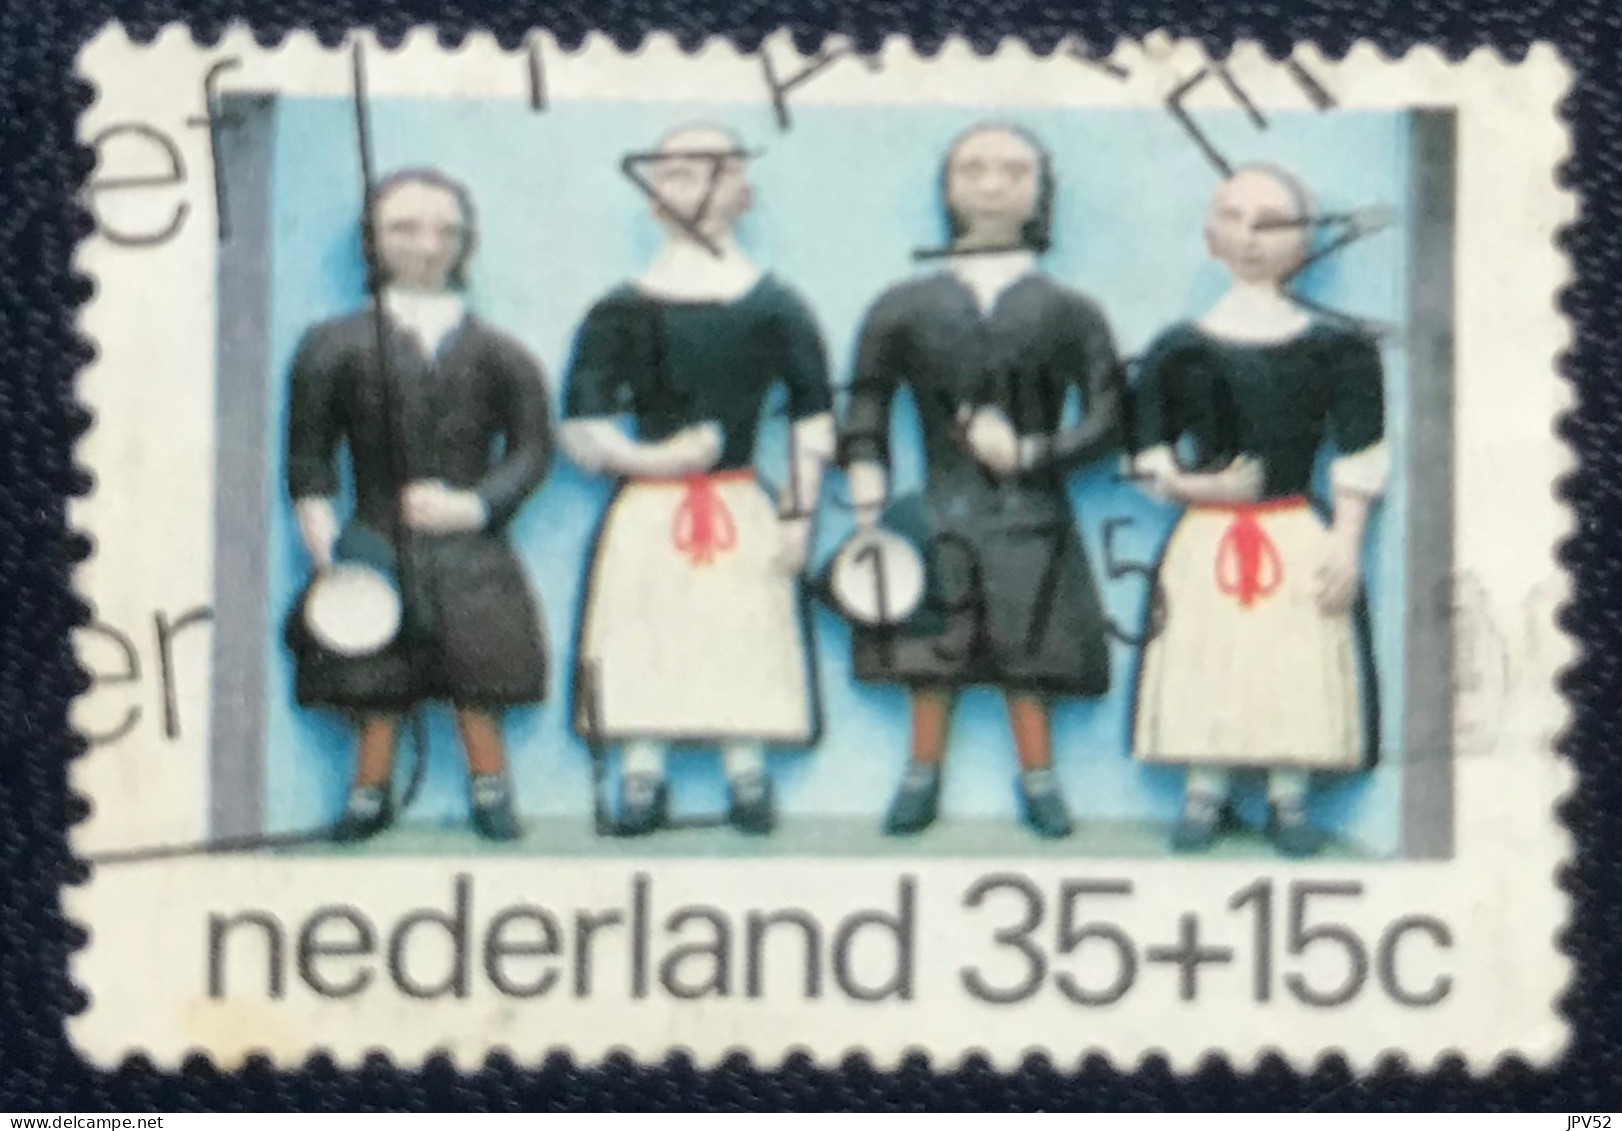 Nederland - C1/23 - 1975 - (°)used - Michel 1059 - Kinderzegels - Gebraucht